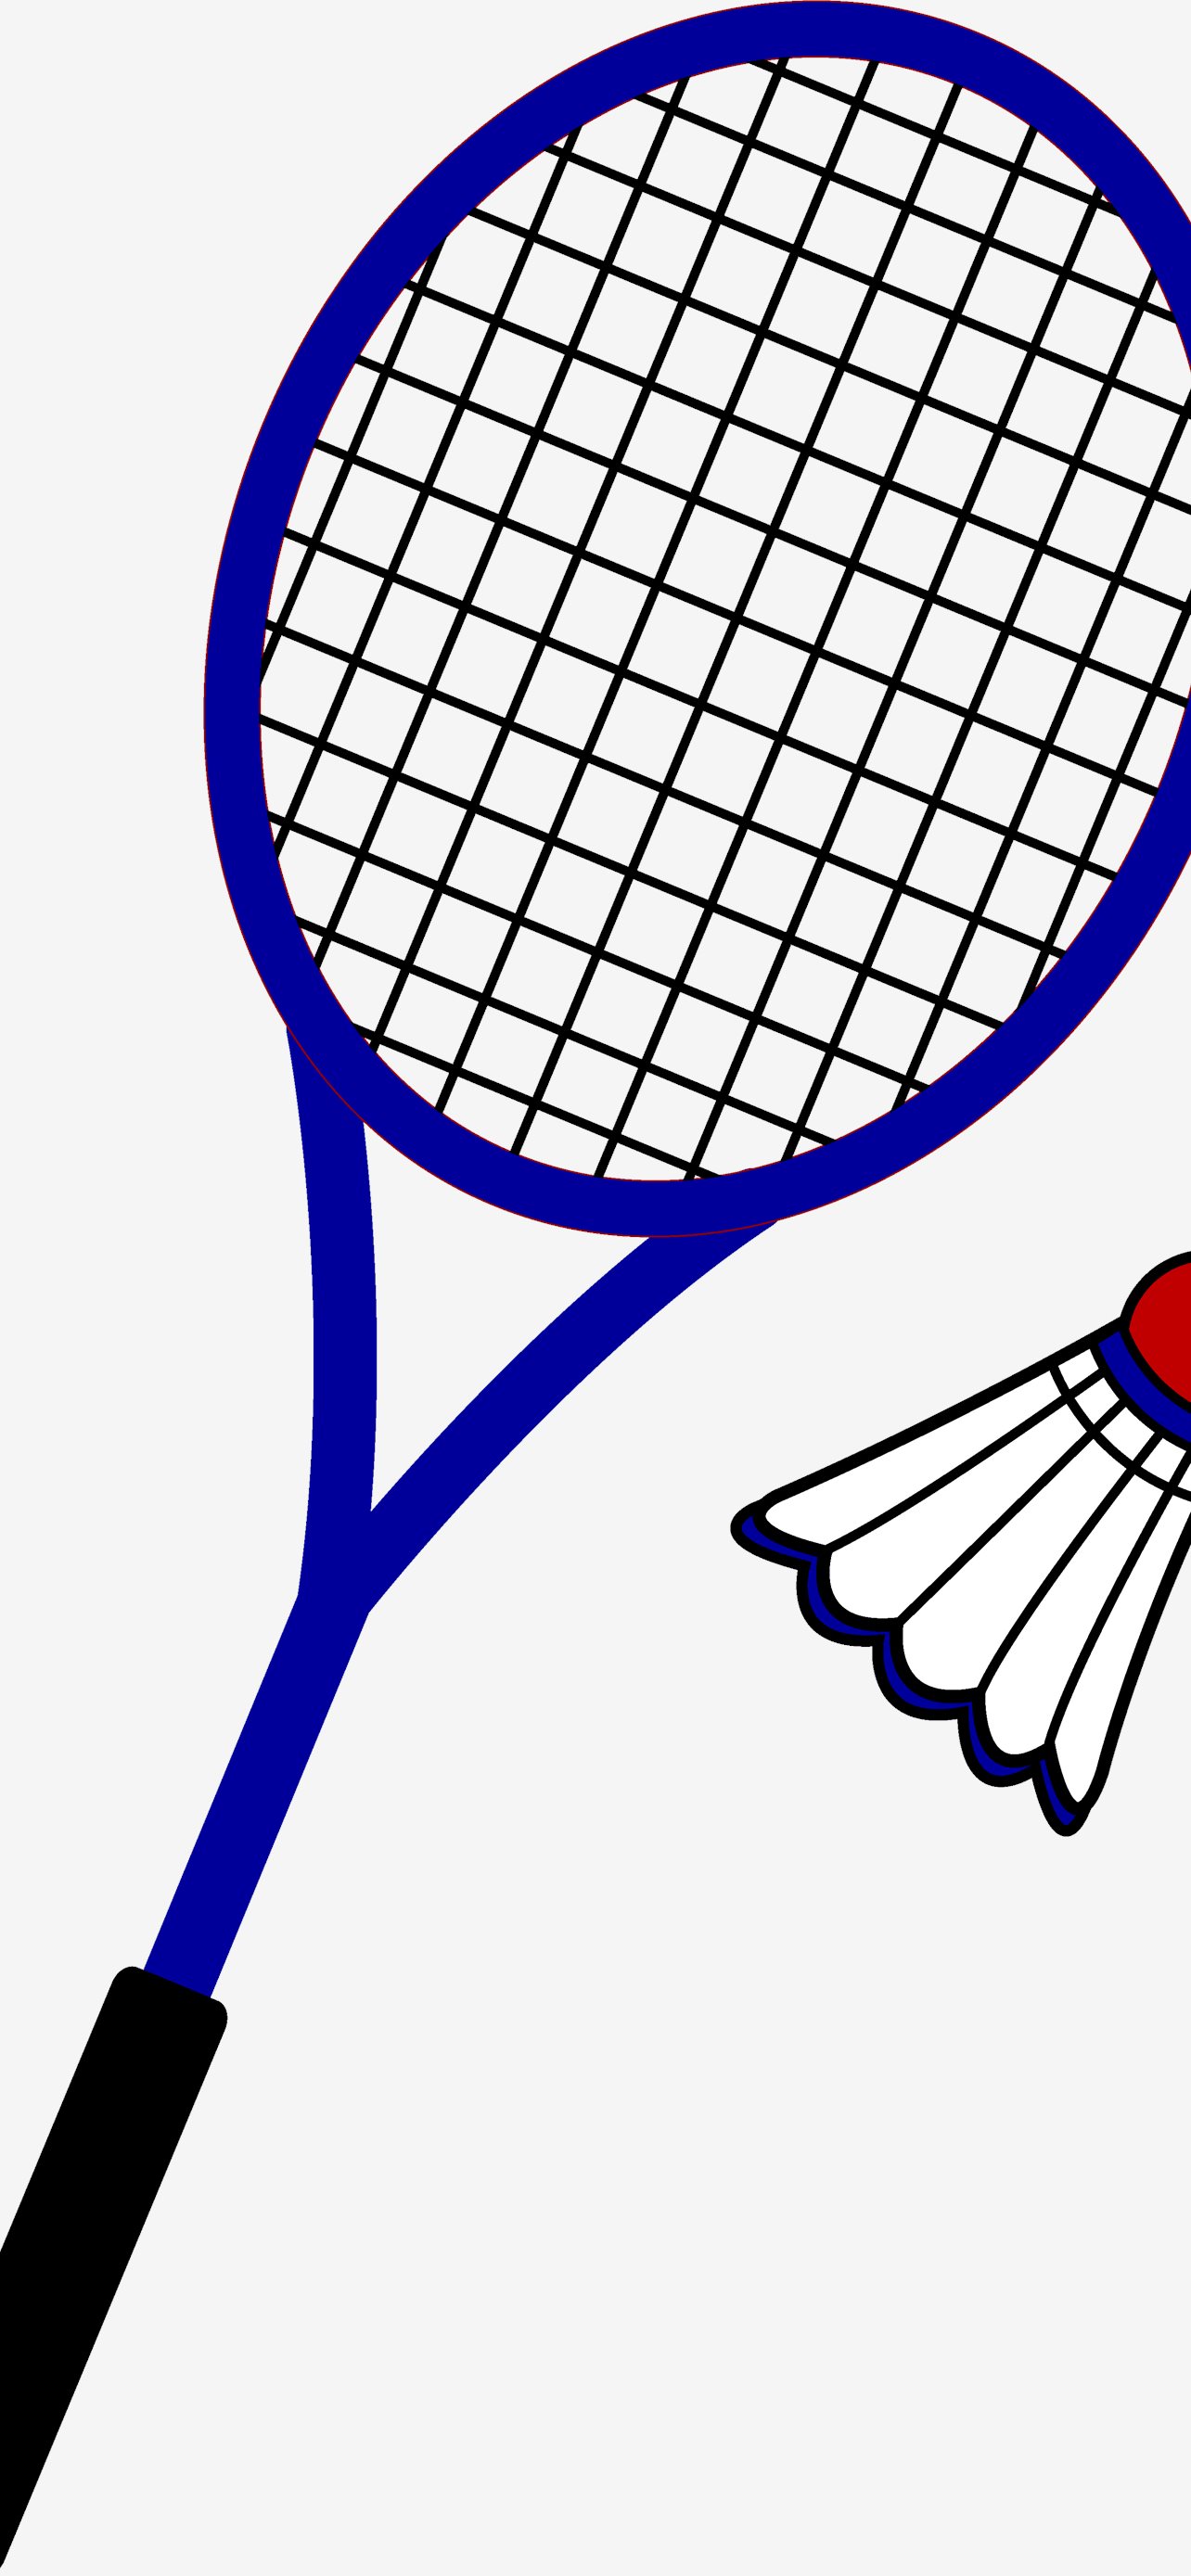 Badminton Wallpaper Images - Free Download on Freepik